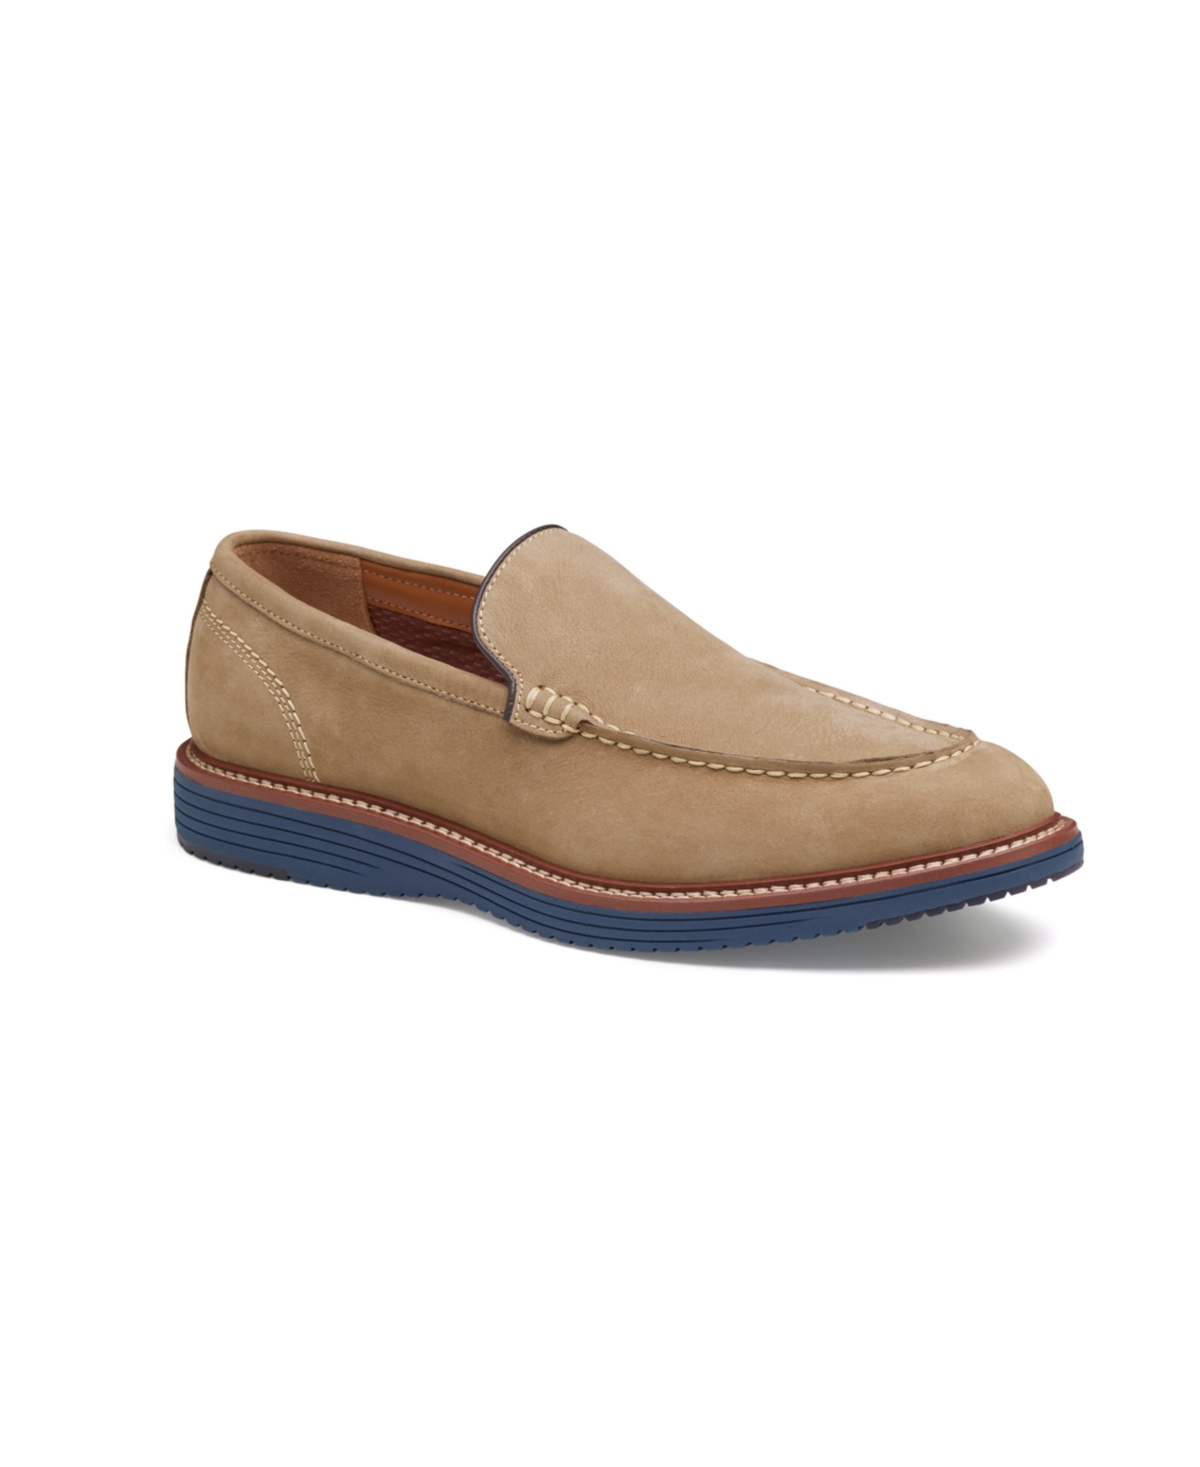 Johnston & Murphy Men's Upton Venetian Slip-On Loafers Men's Shoes